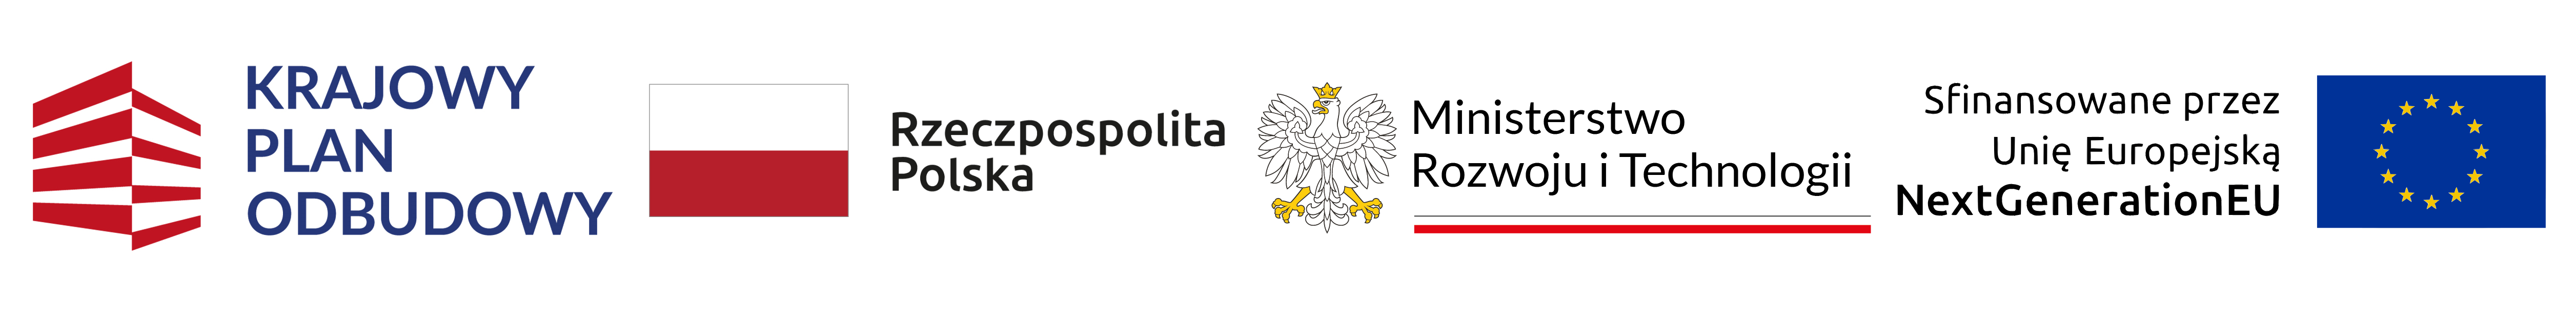 Krajowy Plan Odbudowy, Rzeczpospolita Polska, Ministerstwo Rozwoju i Technologii, NextGenerationEU